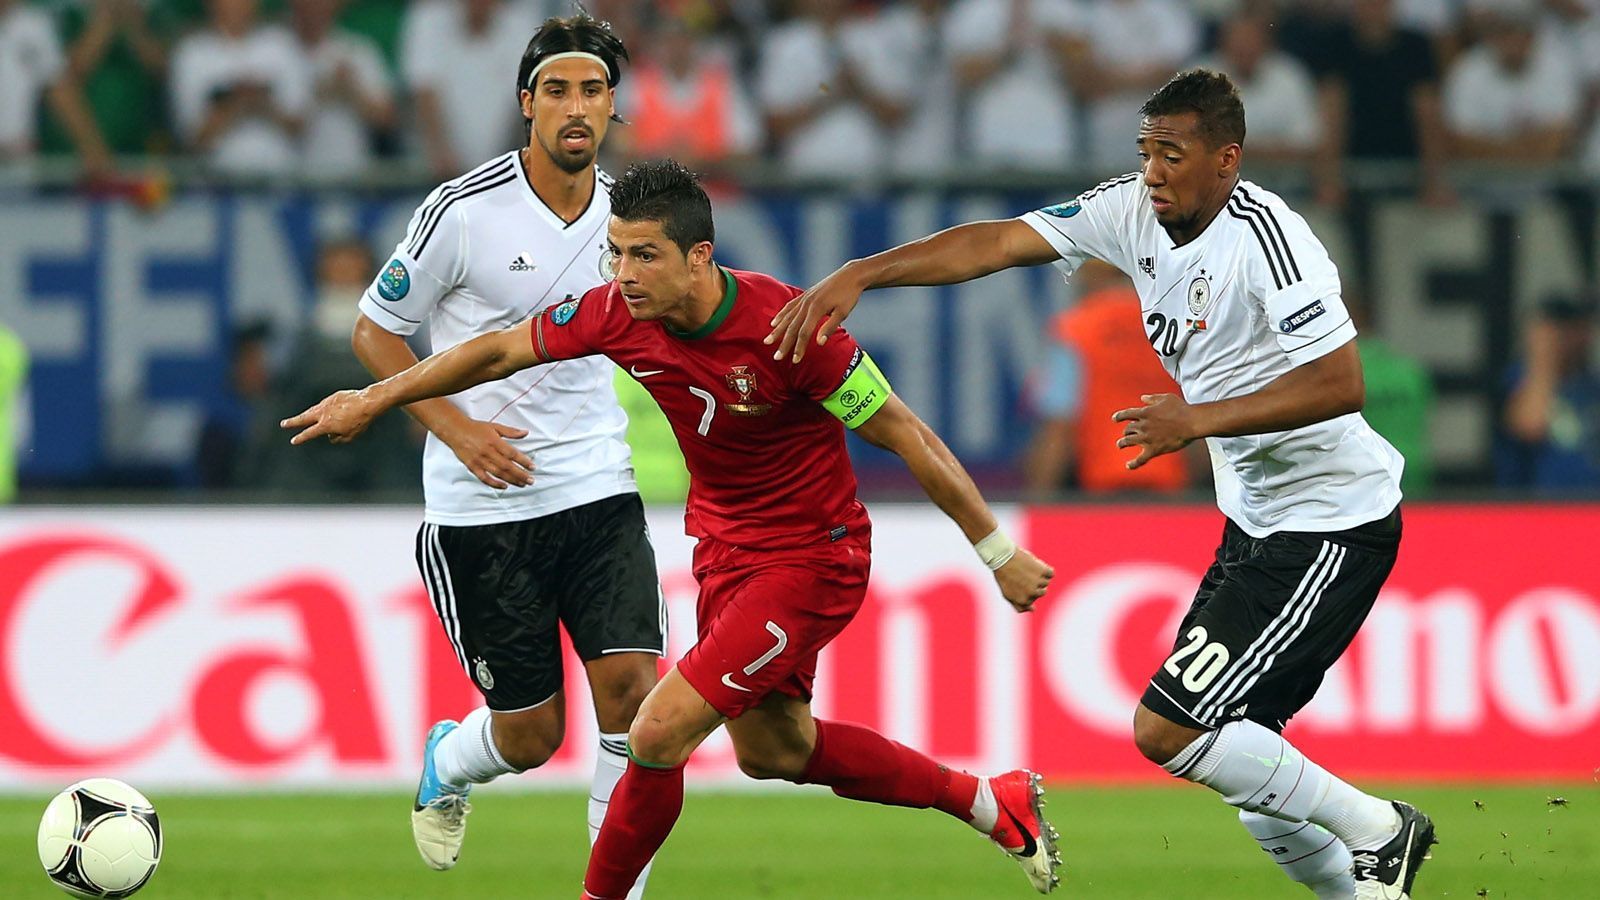 
                <strong>EM 2012 - Vorrunde</strong><br>
                Zum dritten Duell kam es bei der Europameisterschaft 2012 schon in der Vorrunde. Ronaldo war gerade spanischer Meister mit Real Madrid geworden. Doch im Auftaktspiel gegen Deutschland war von seinen Ballkünsten nur wenig zu sehen...
              